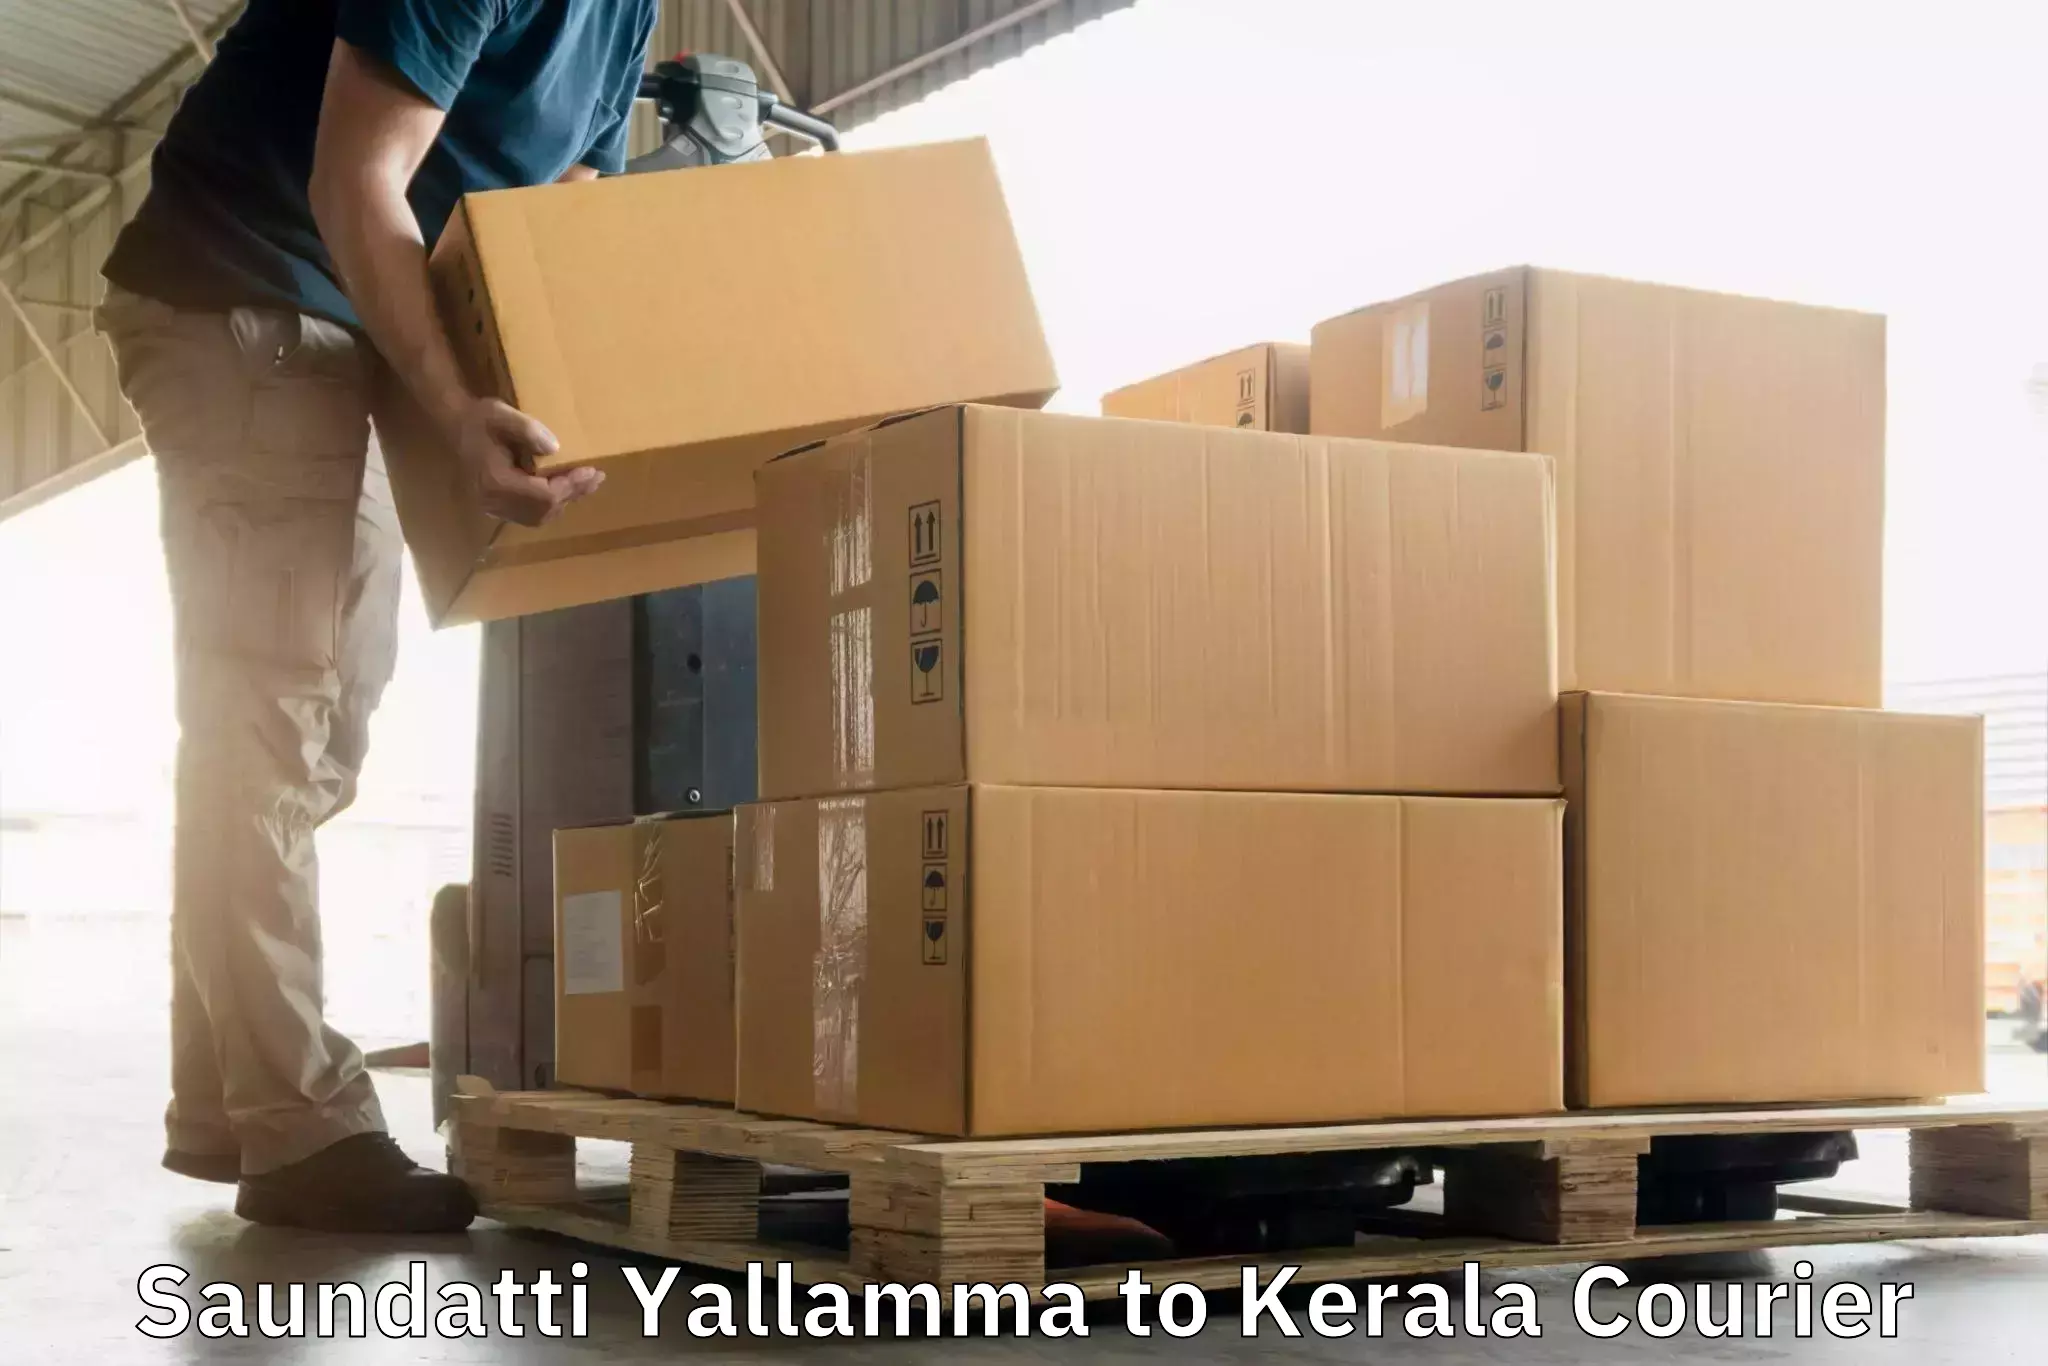 State-of-the-art courier technology Saundatti Yallamma to Pangodu